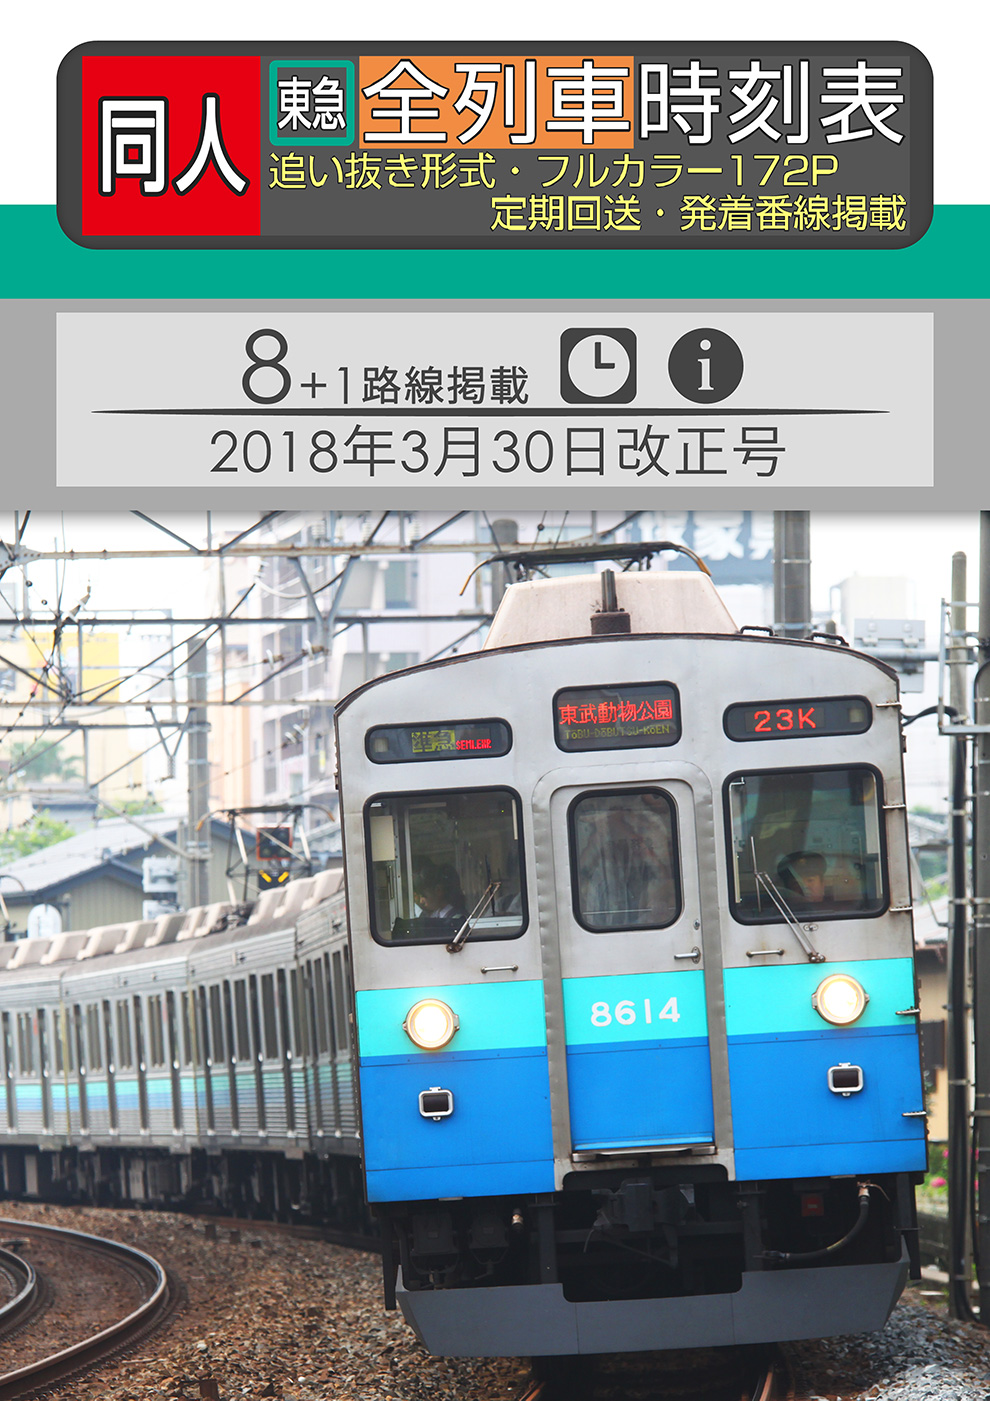 同人 東急全列車時刻表 2018年3月30日改正号